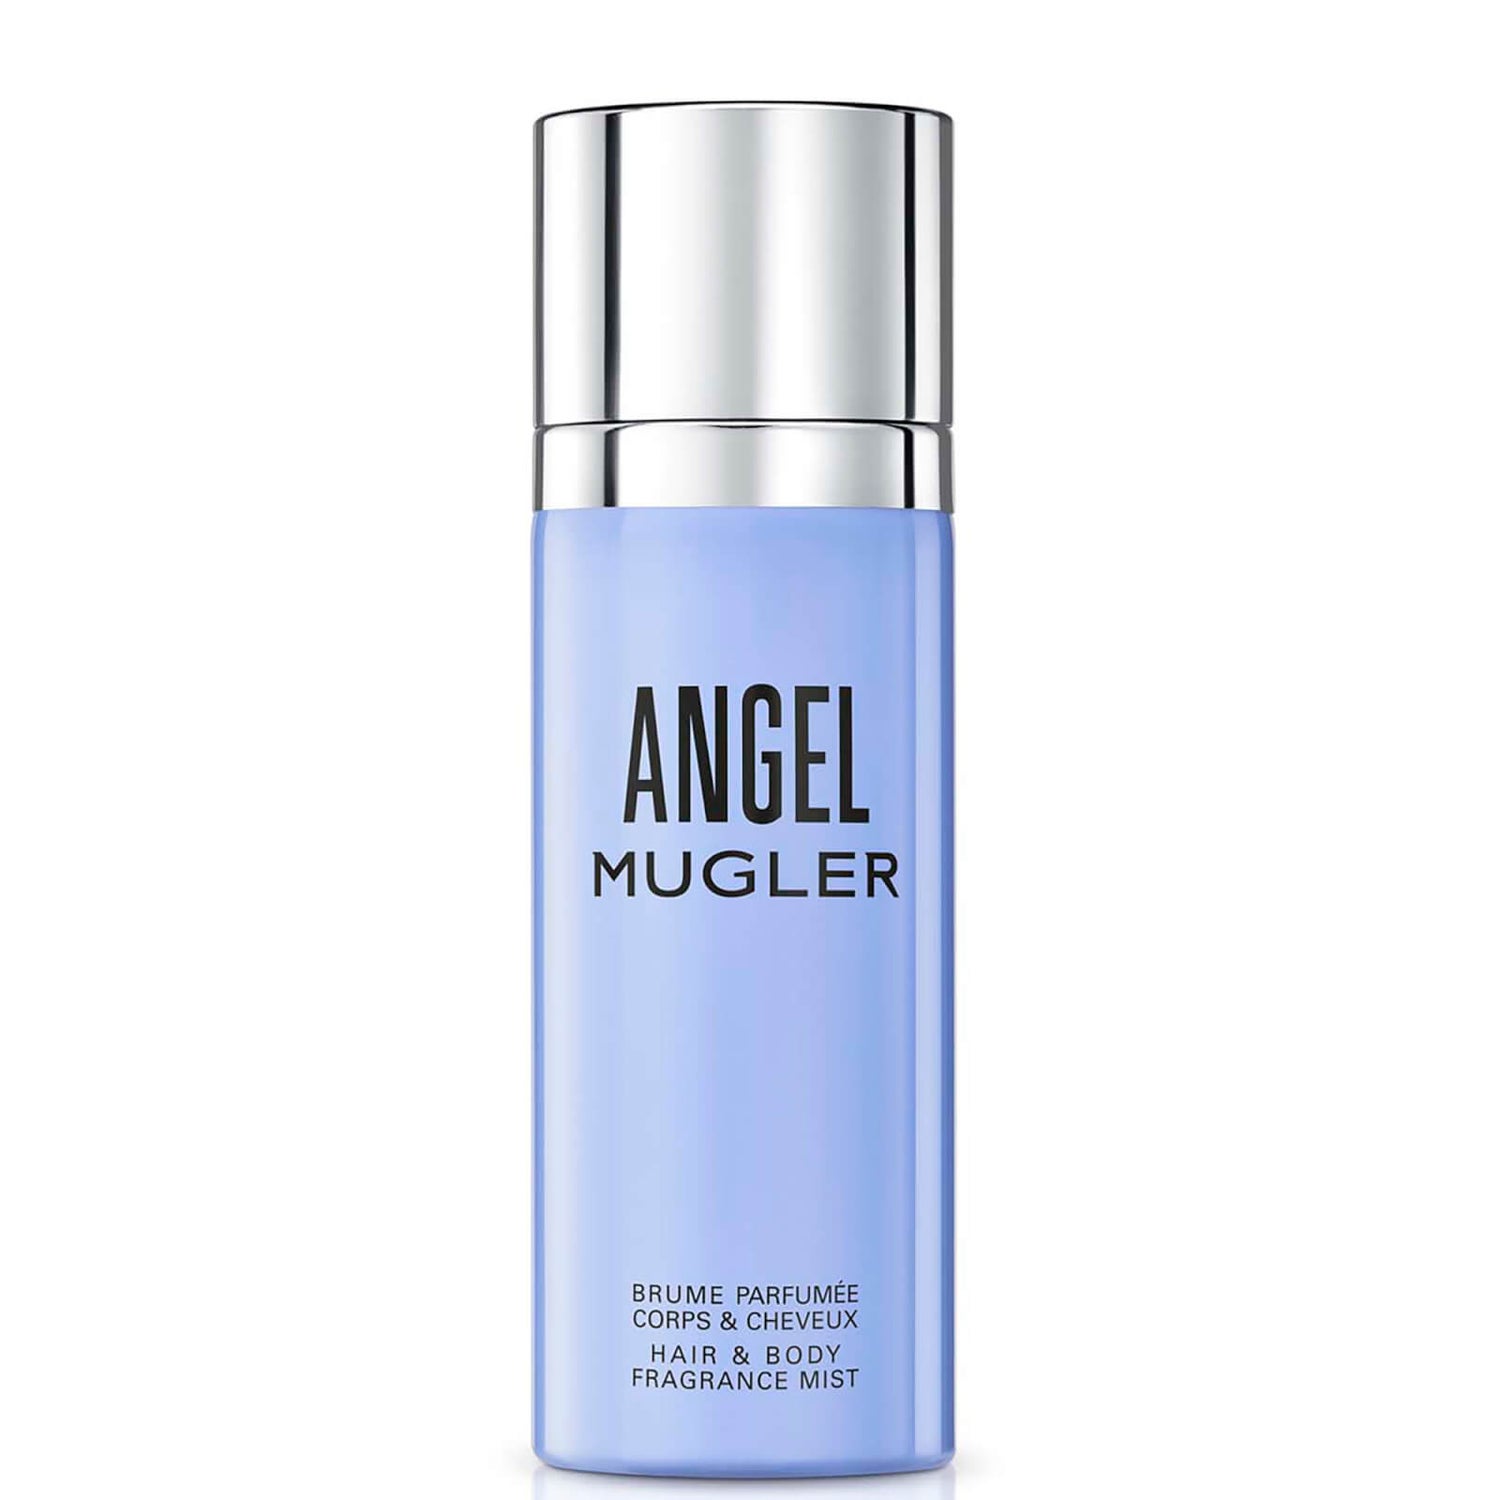 MUGLER Angel Eau de Parfum Hair and Body Mist 100ml